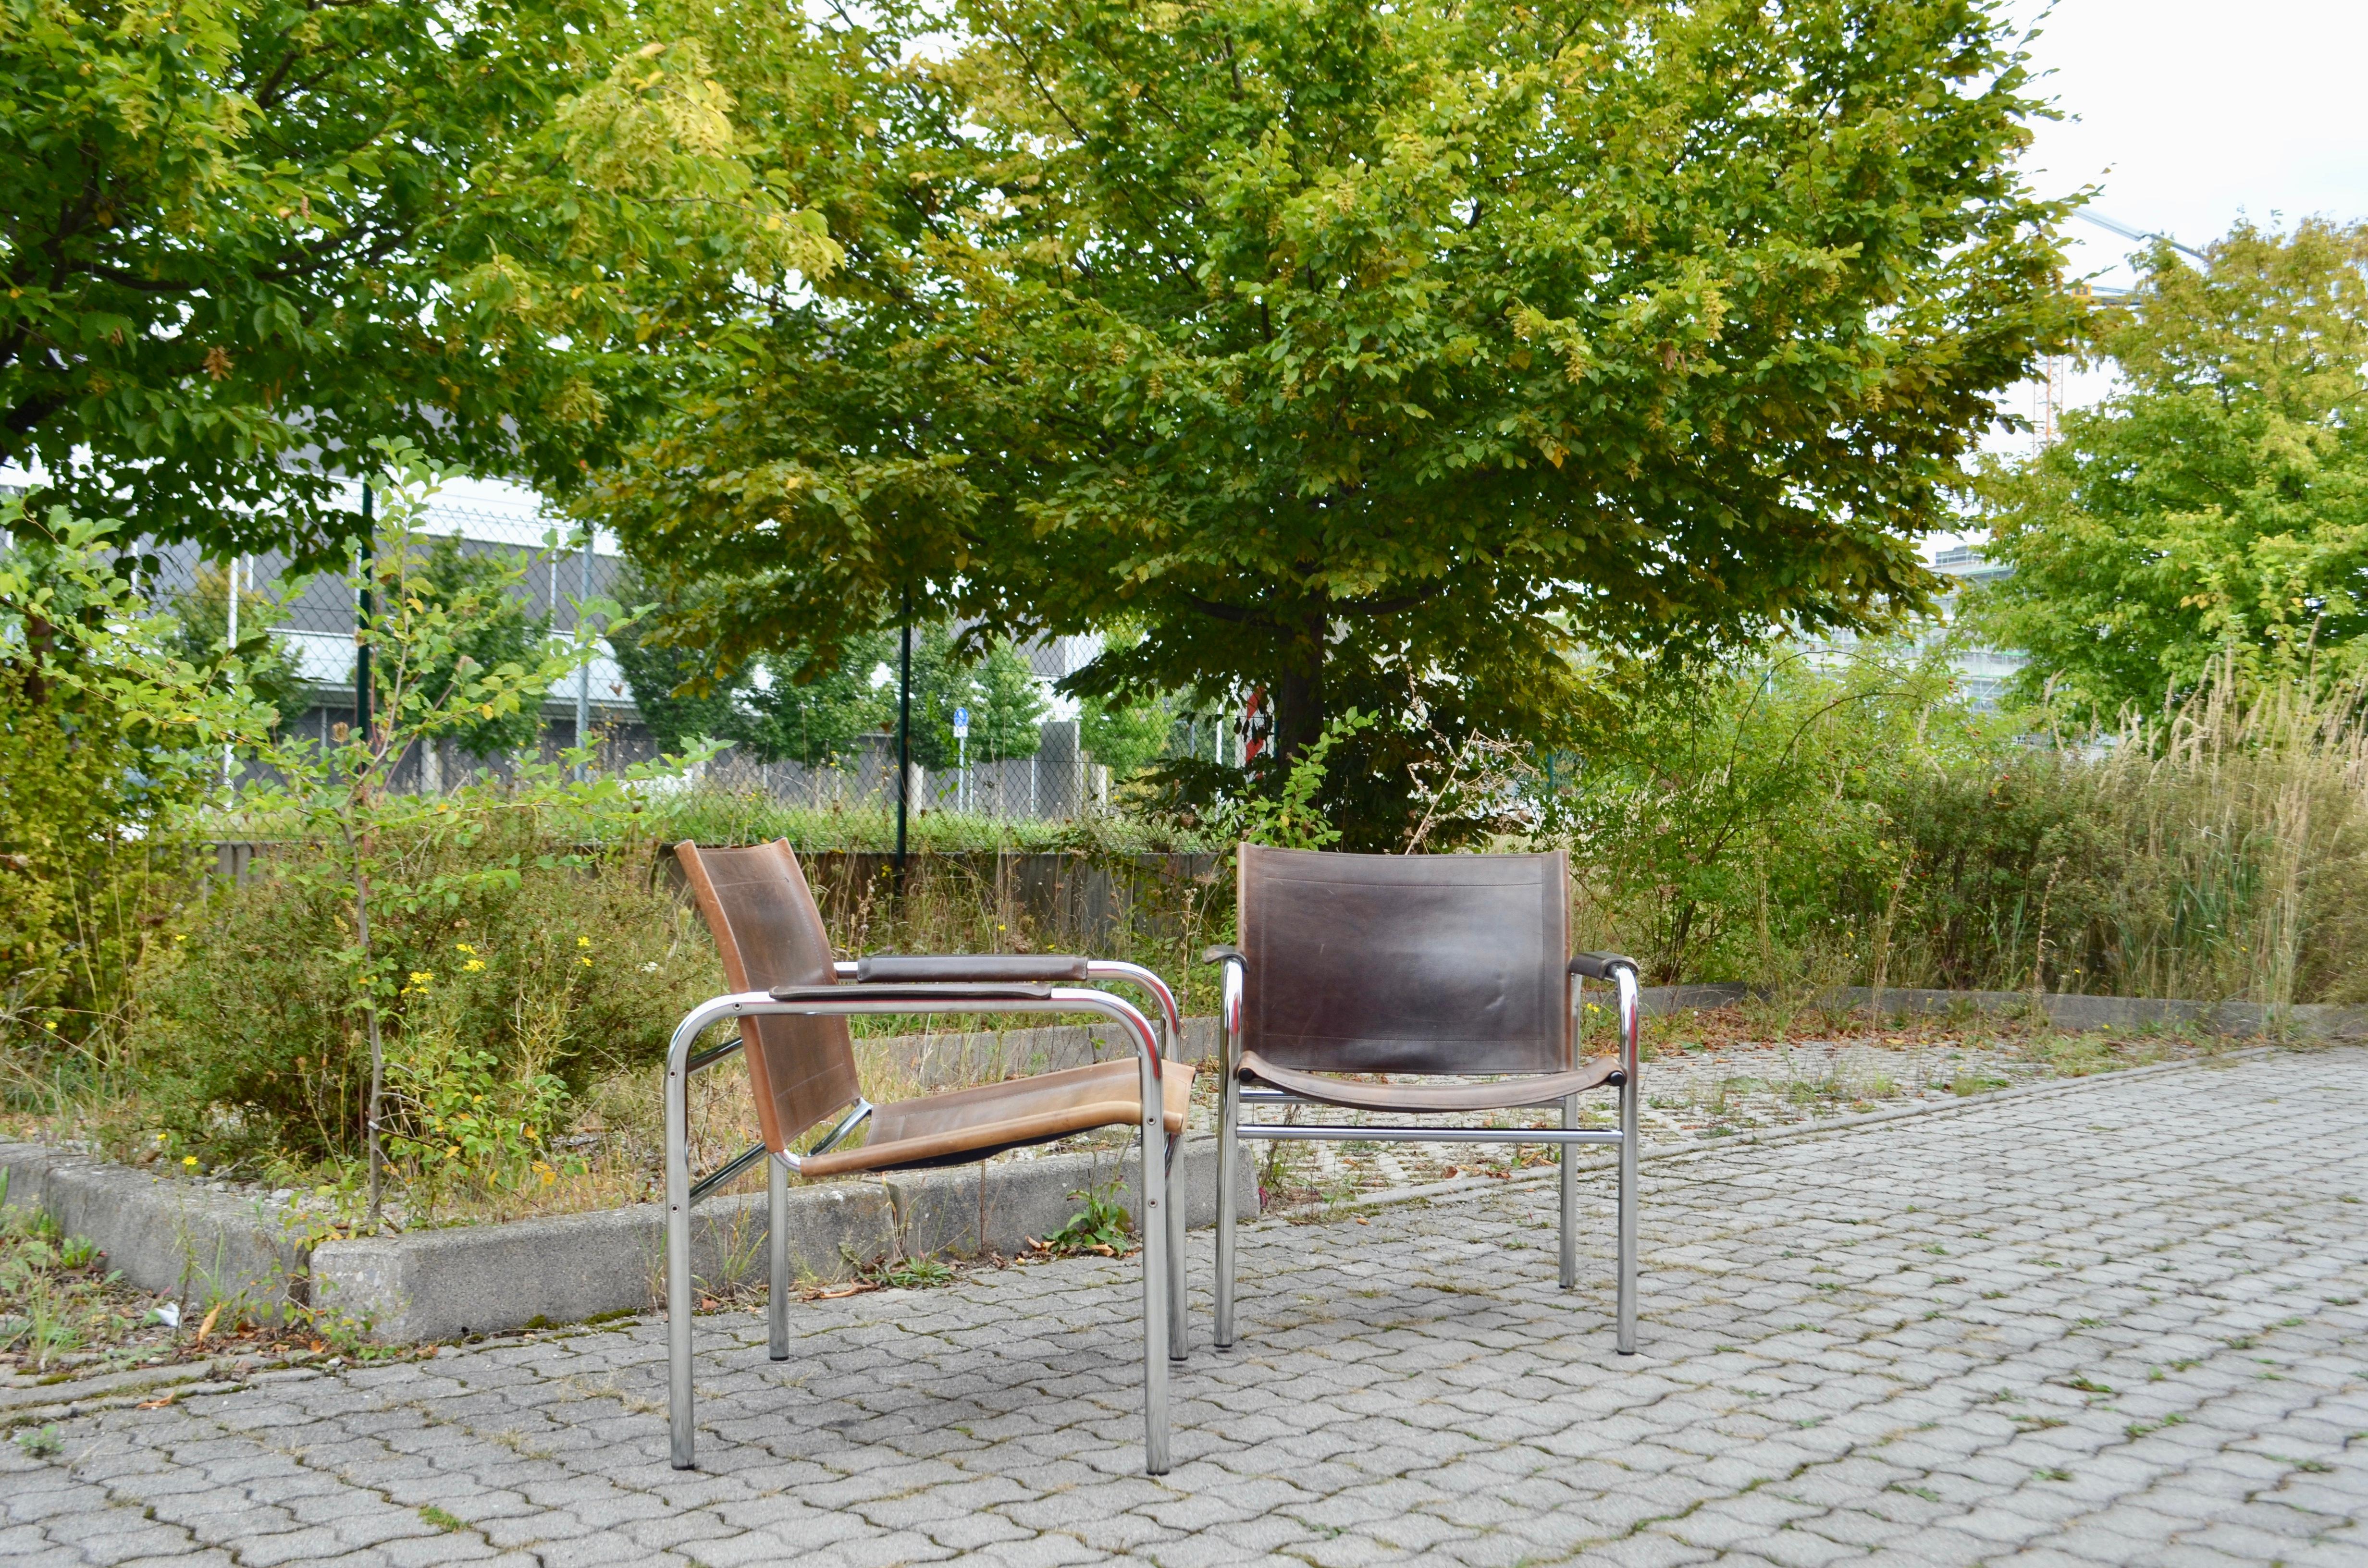 Ikea Modell Klinte, conçu par Tord Bjorklund dans les années 80.
Des chaises longues confortables, un design classique de Tord Bjorklund.
Cuir de selle épais brun et acier tubulaire chromé.
Le cuir est magnifiquement patiné.
Grande